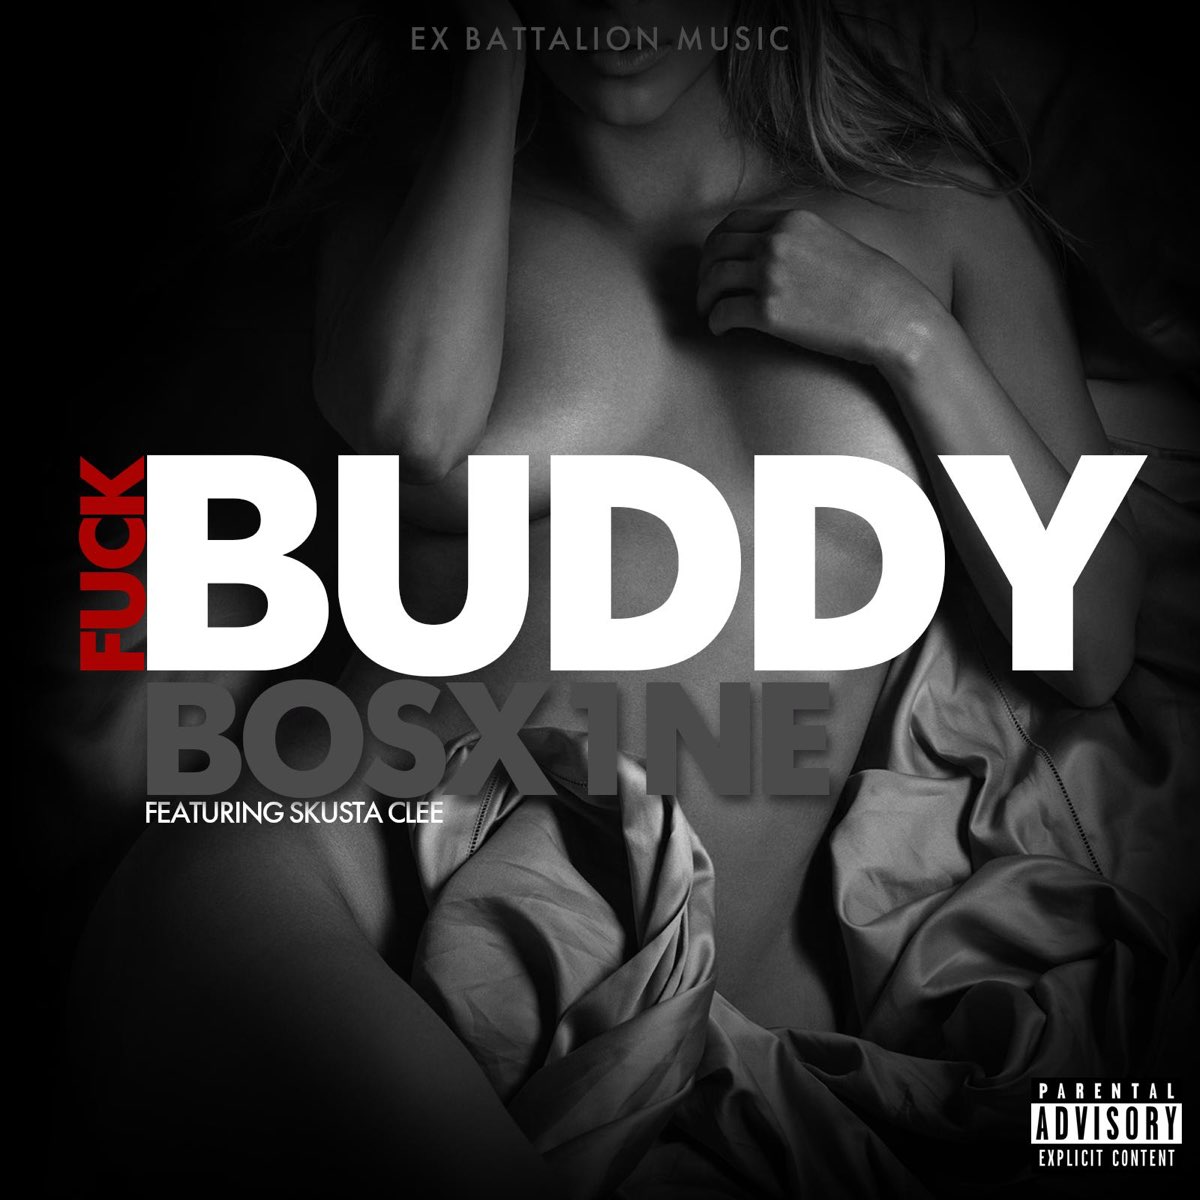 Fuck Buddy (feat. Skusta Clee) - Single - Album by Bosx1ne - Apple Music